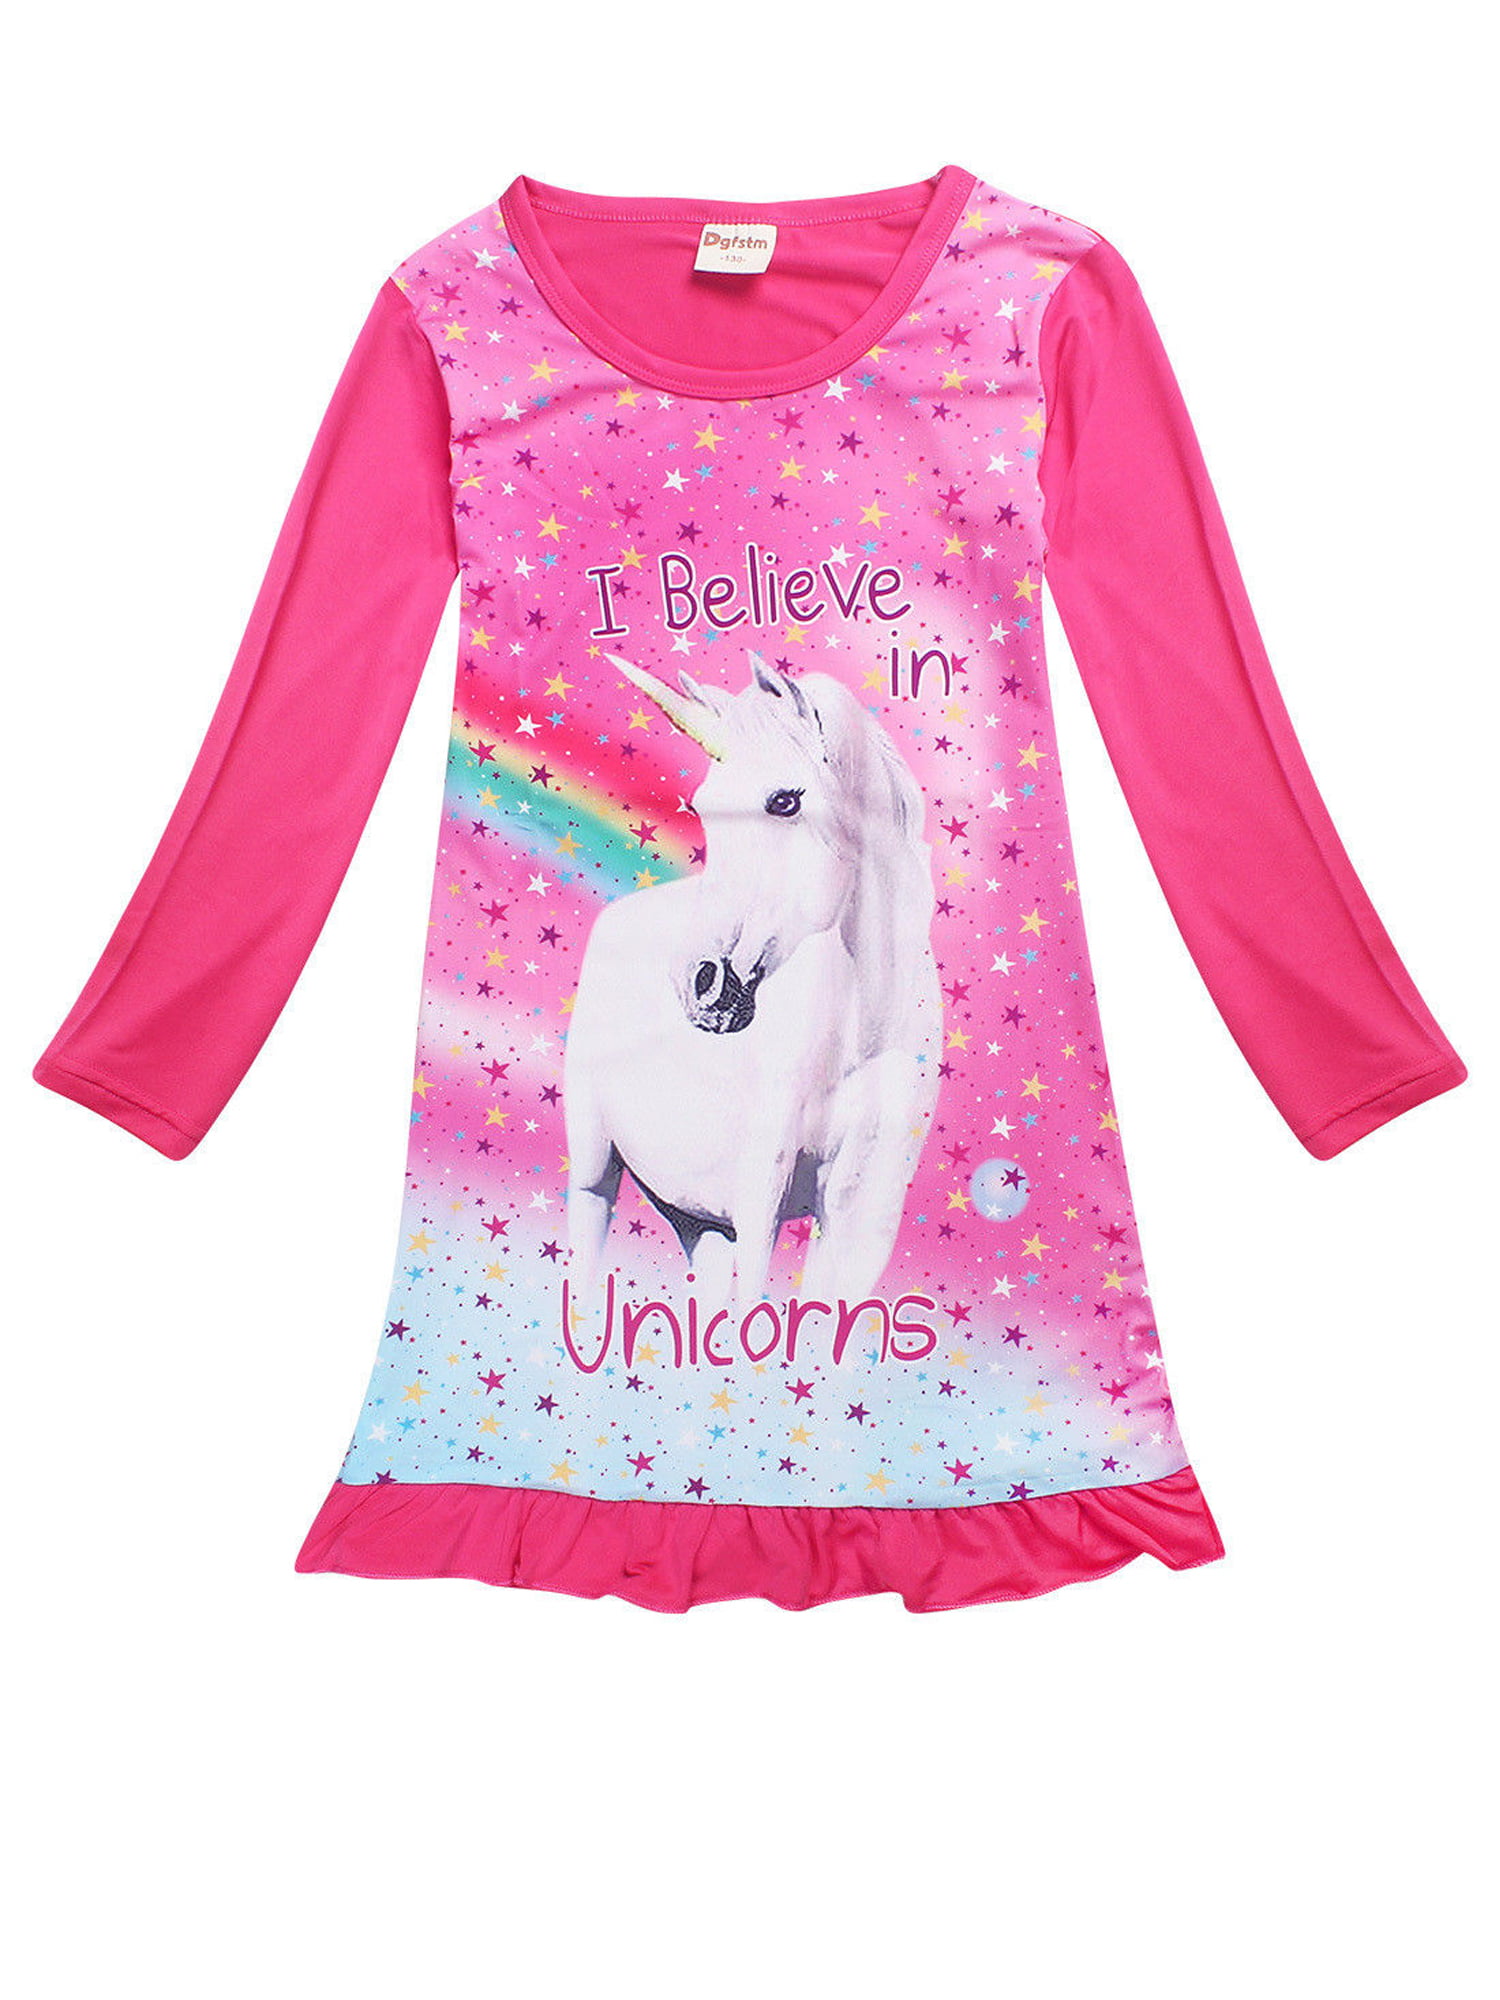 Kids Girls Unicorn Shirt Dress Short Sleeve Casual Party Summer Beach Sundress